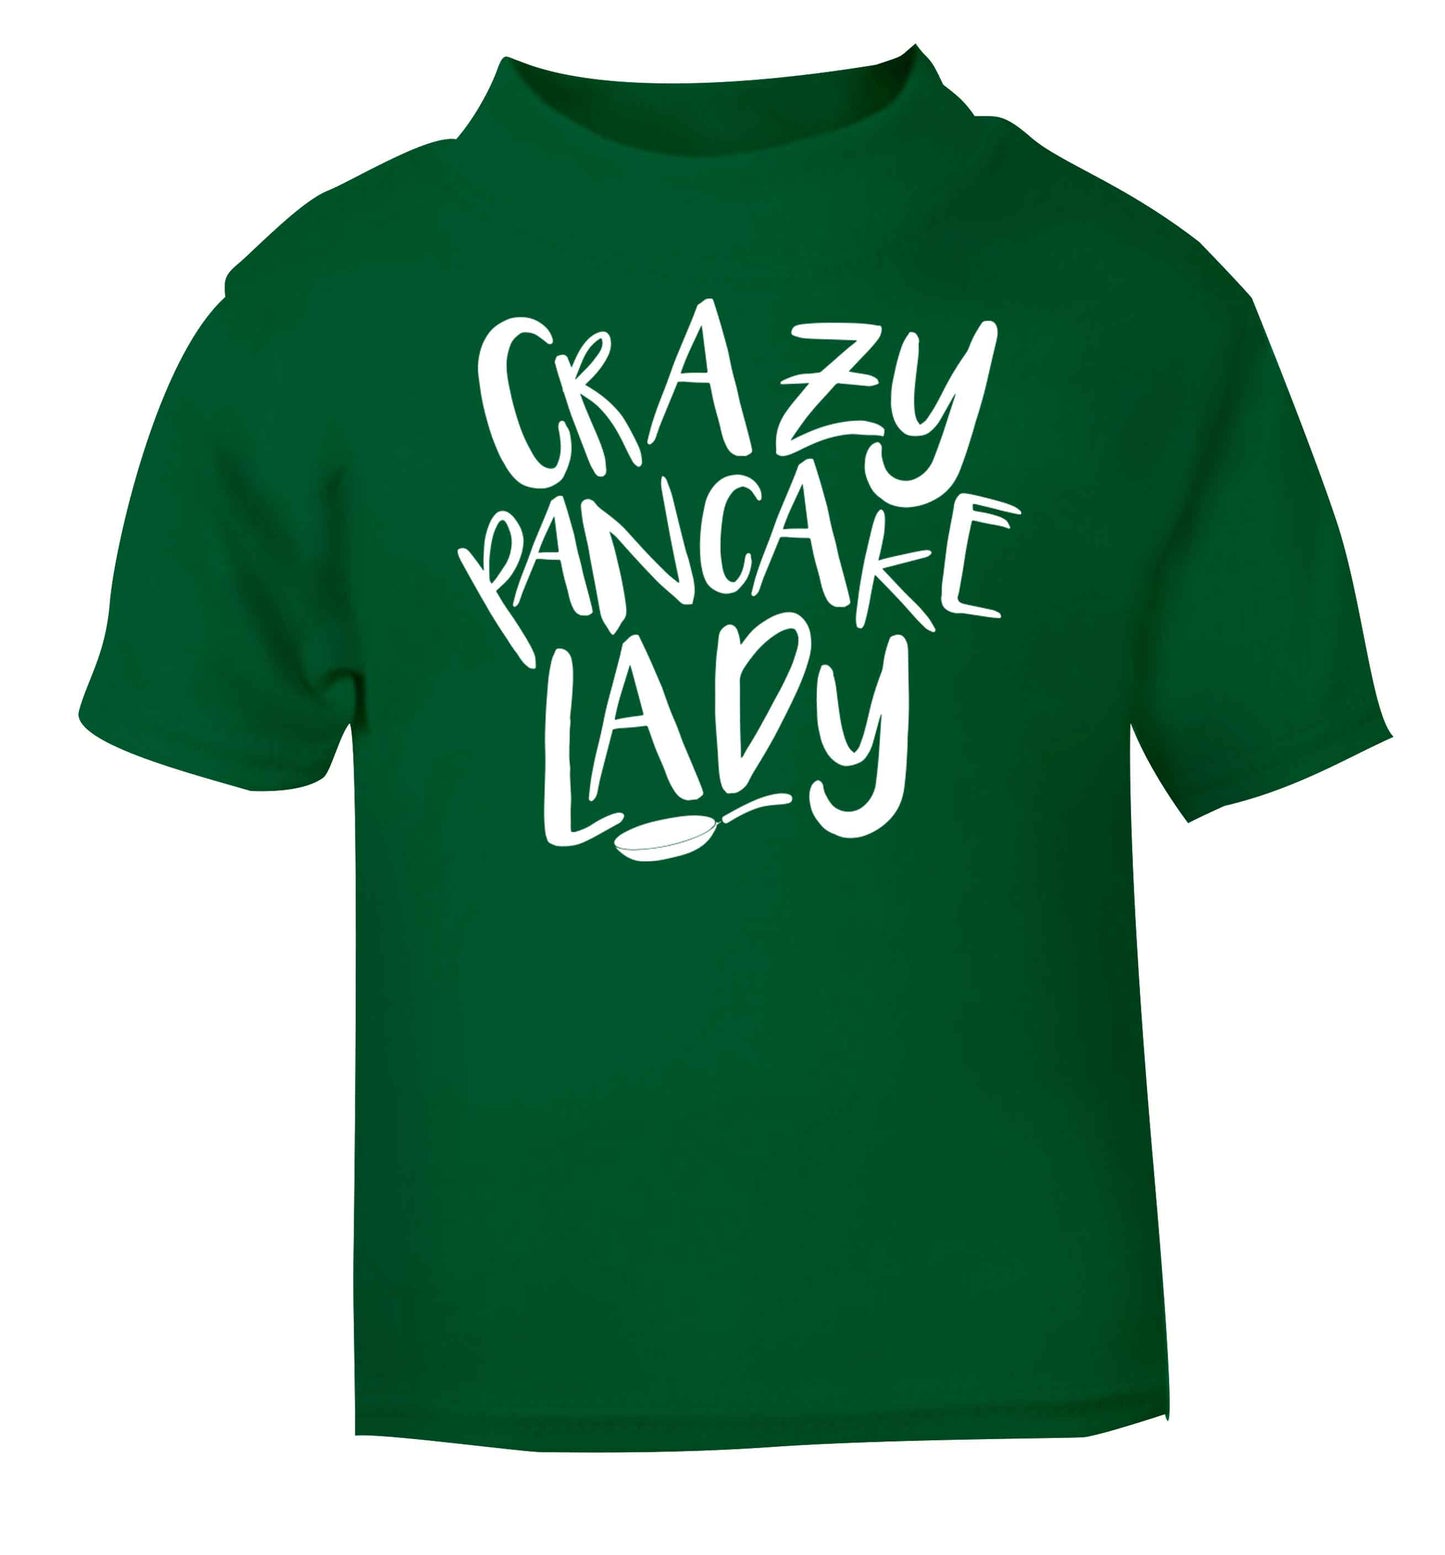 Crazy pancake lady green baby toddler Tshirt 2 Years